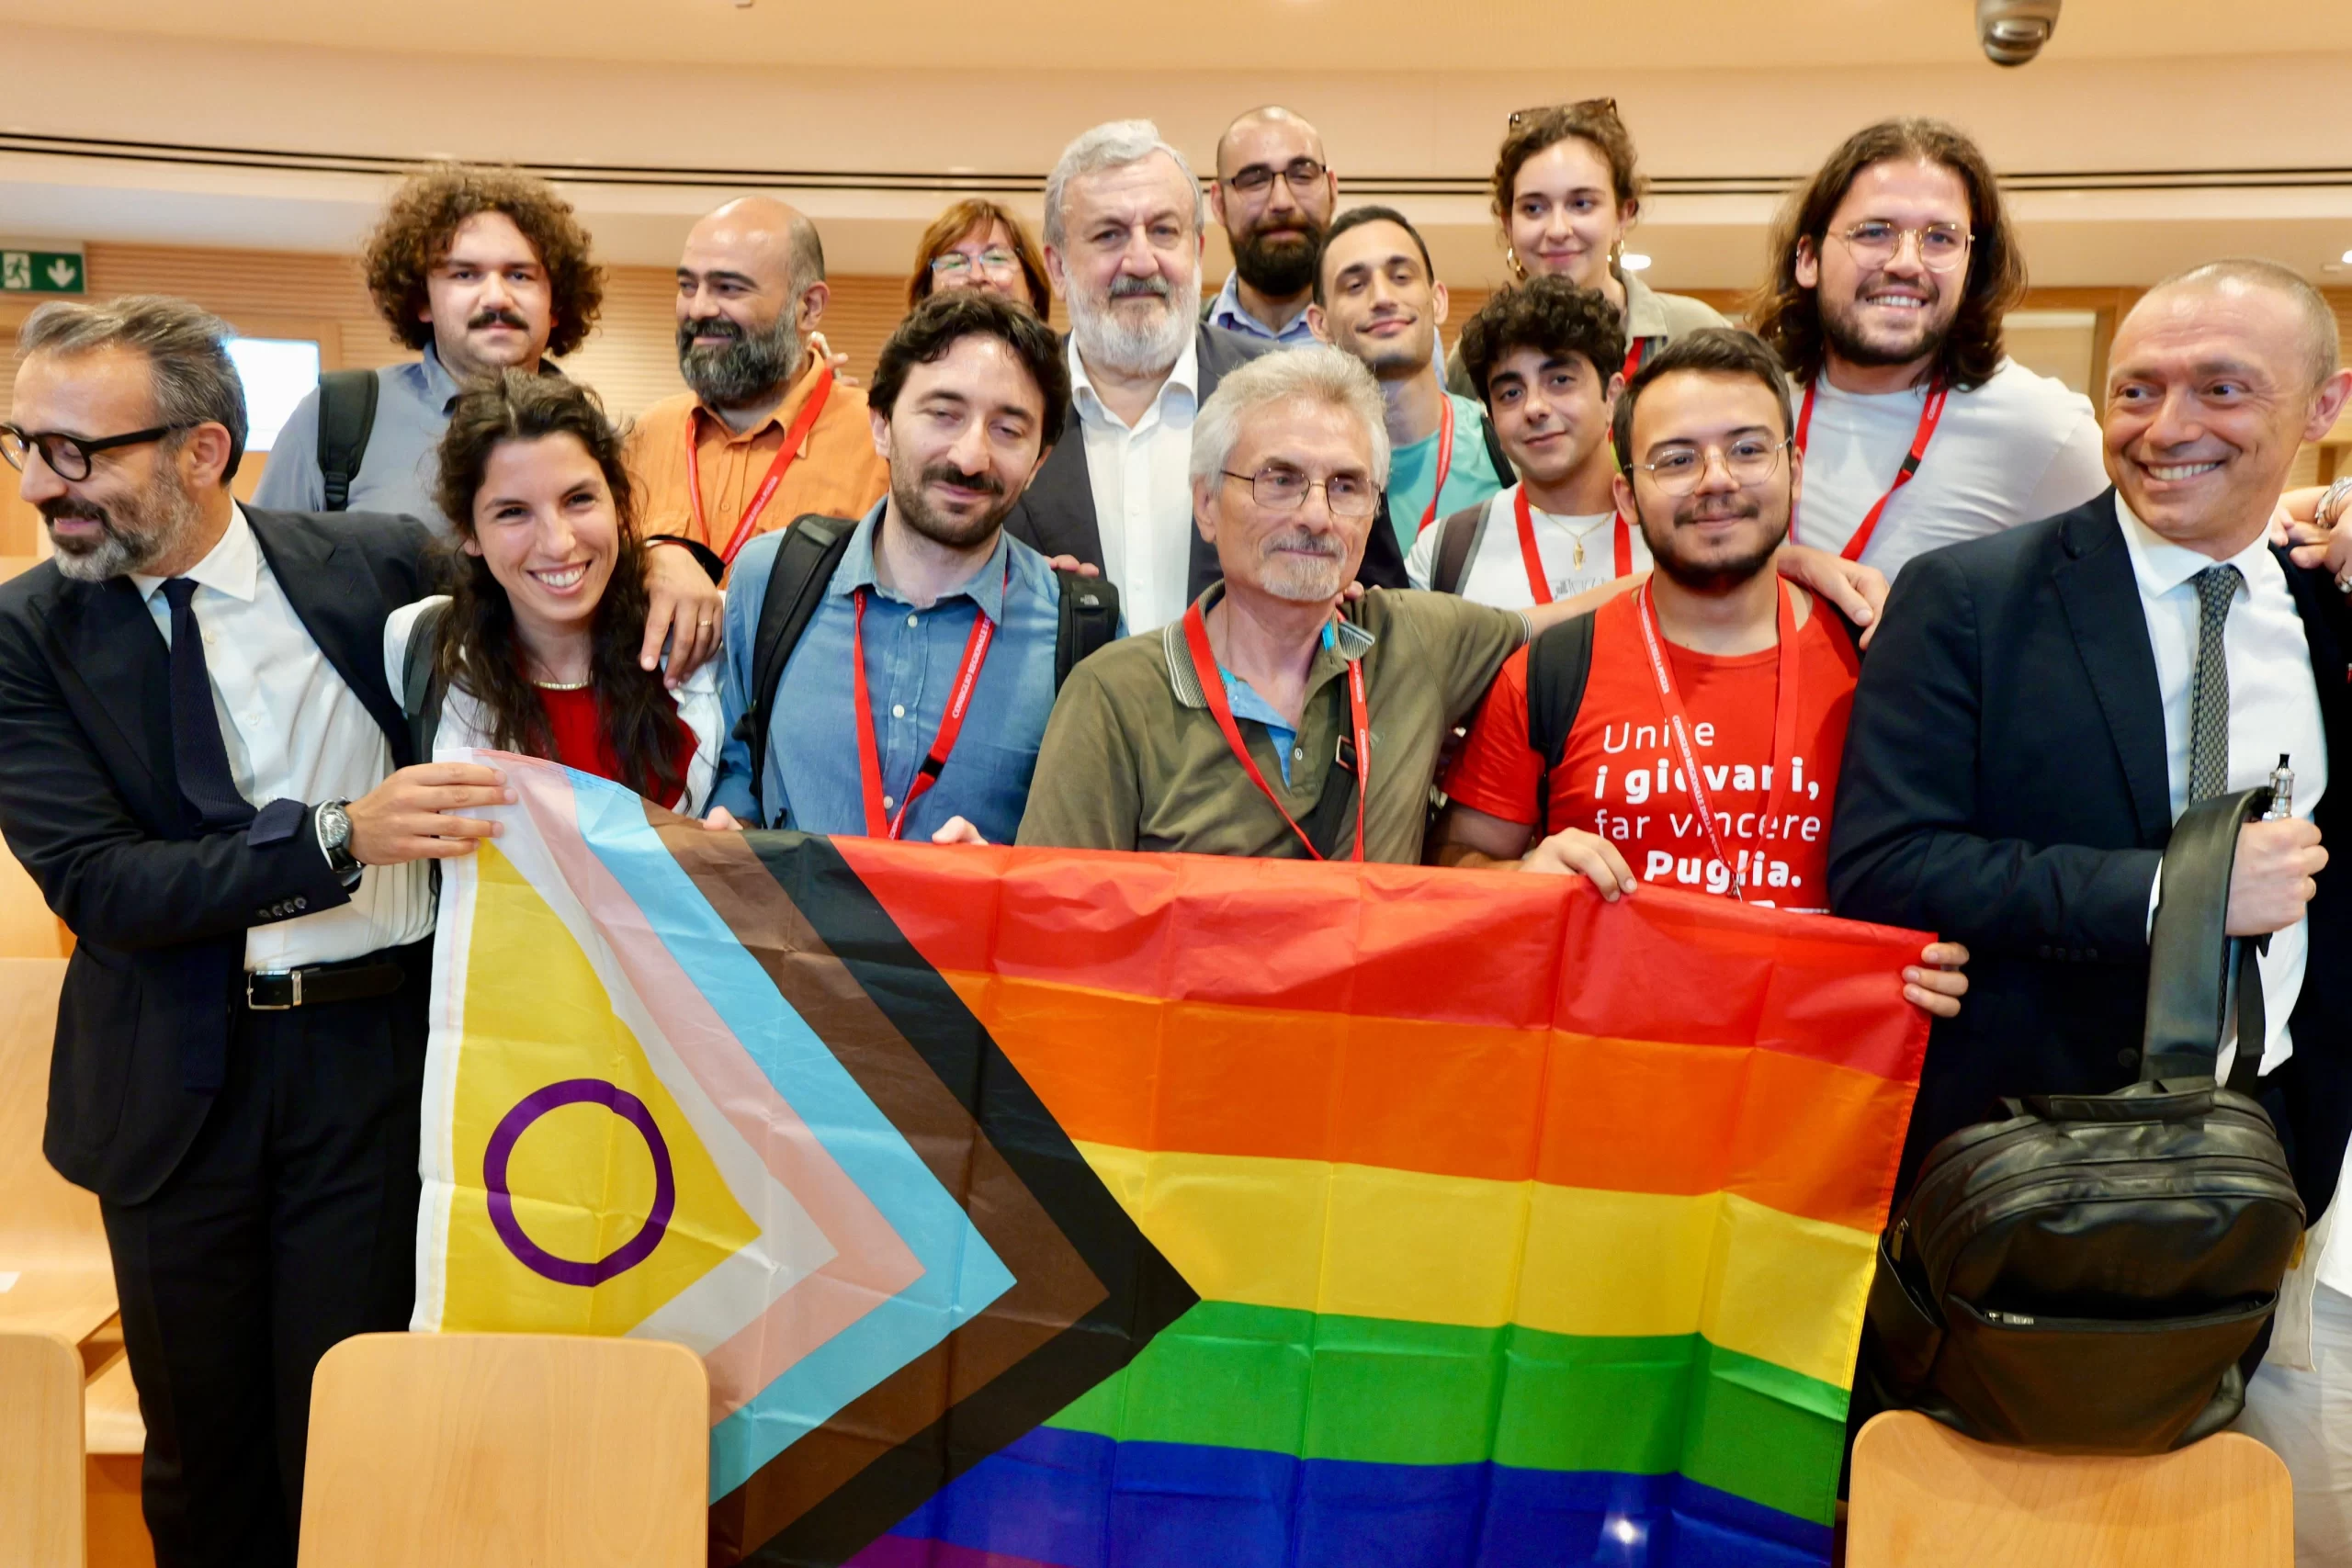 Approvata la legge regionale contro le discriminazioni basate sul genere e sull'orientamento sessuale. Emiliano: "Puglia più inclusiva"